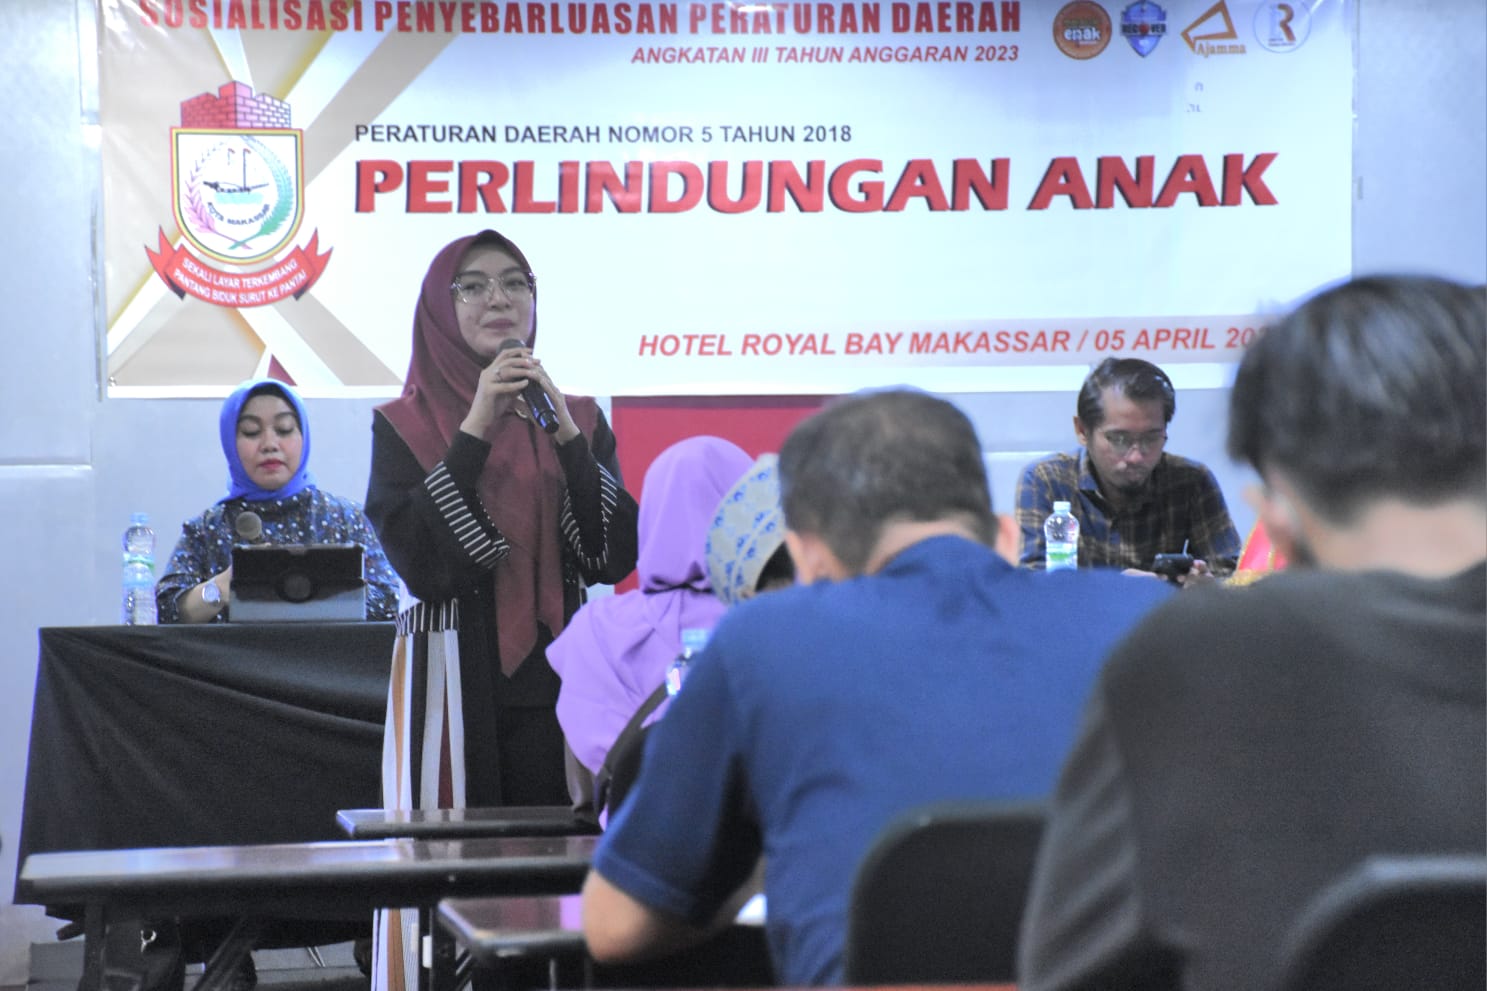 Anggota DPRD Kota Makassar, Budi Hastuti menggelar Sosialisasi Peraturan Daerah (Perda) nomor 5 tahun 2018 tentang Perlindungan Anak, di Hotel Royal Bay Makassar, Rabu (5/4/2023).